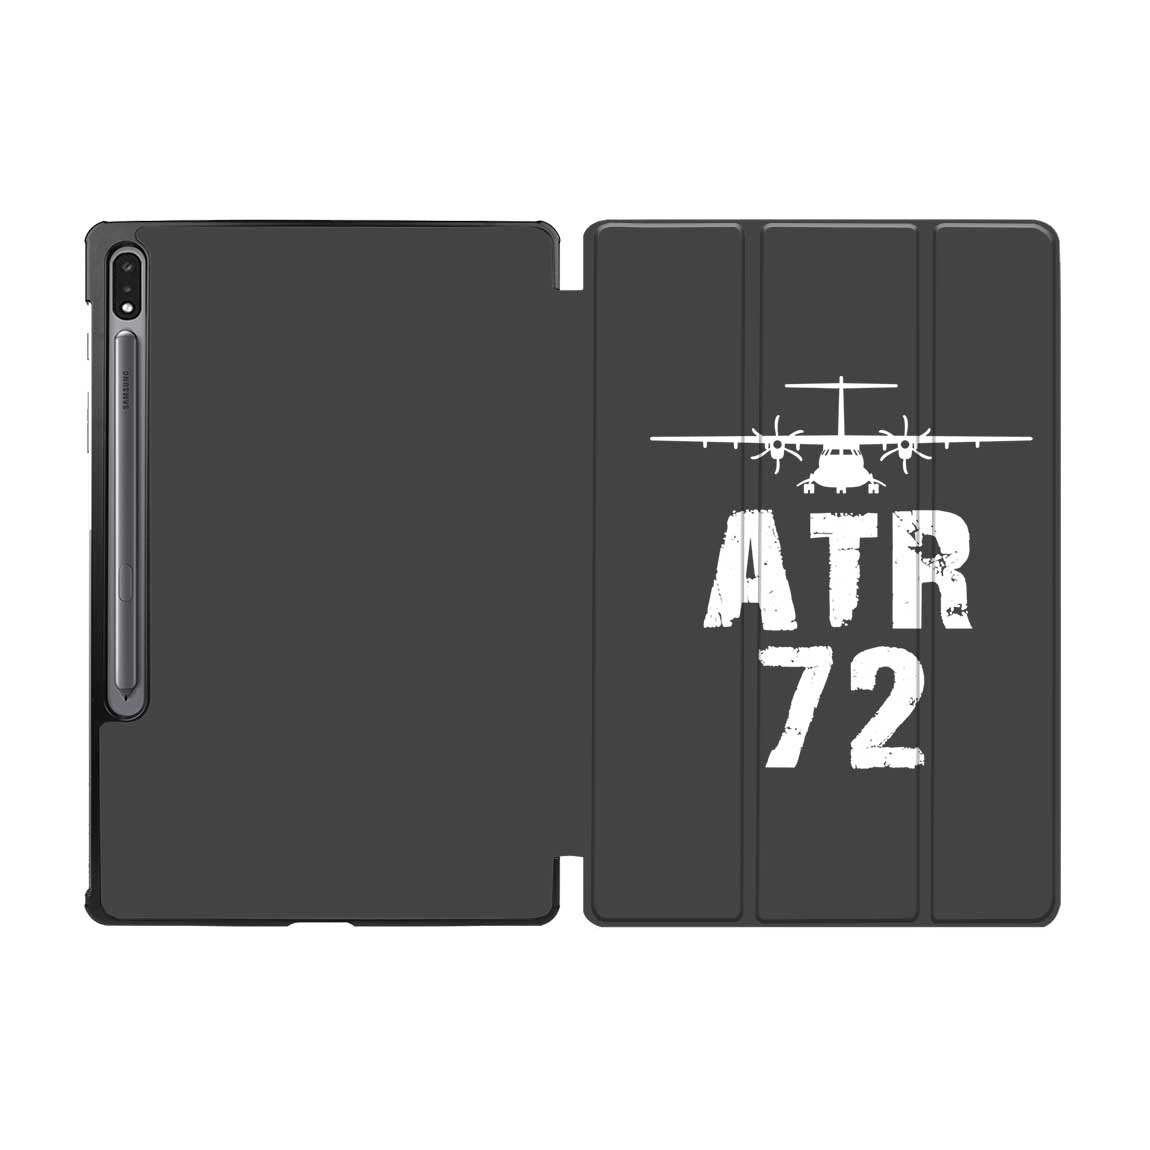 ATR-72 & Plane Designed Samsung Tablet Cases